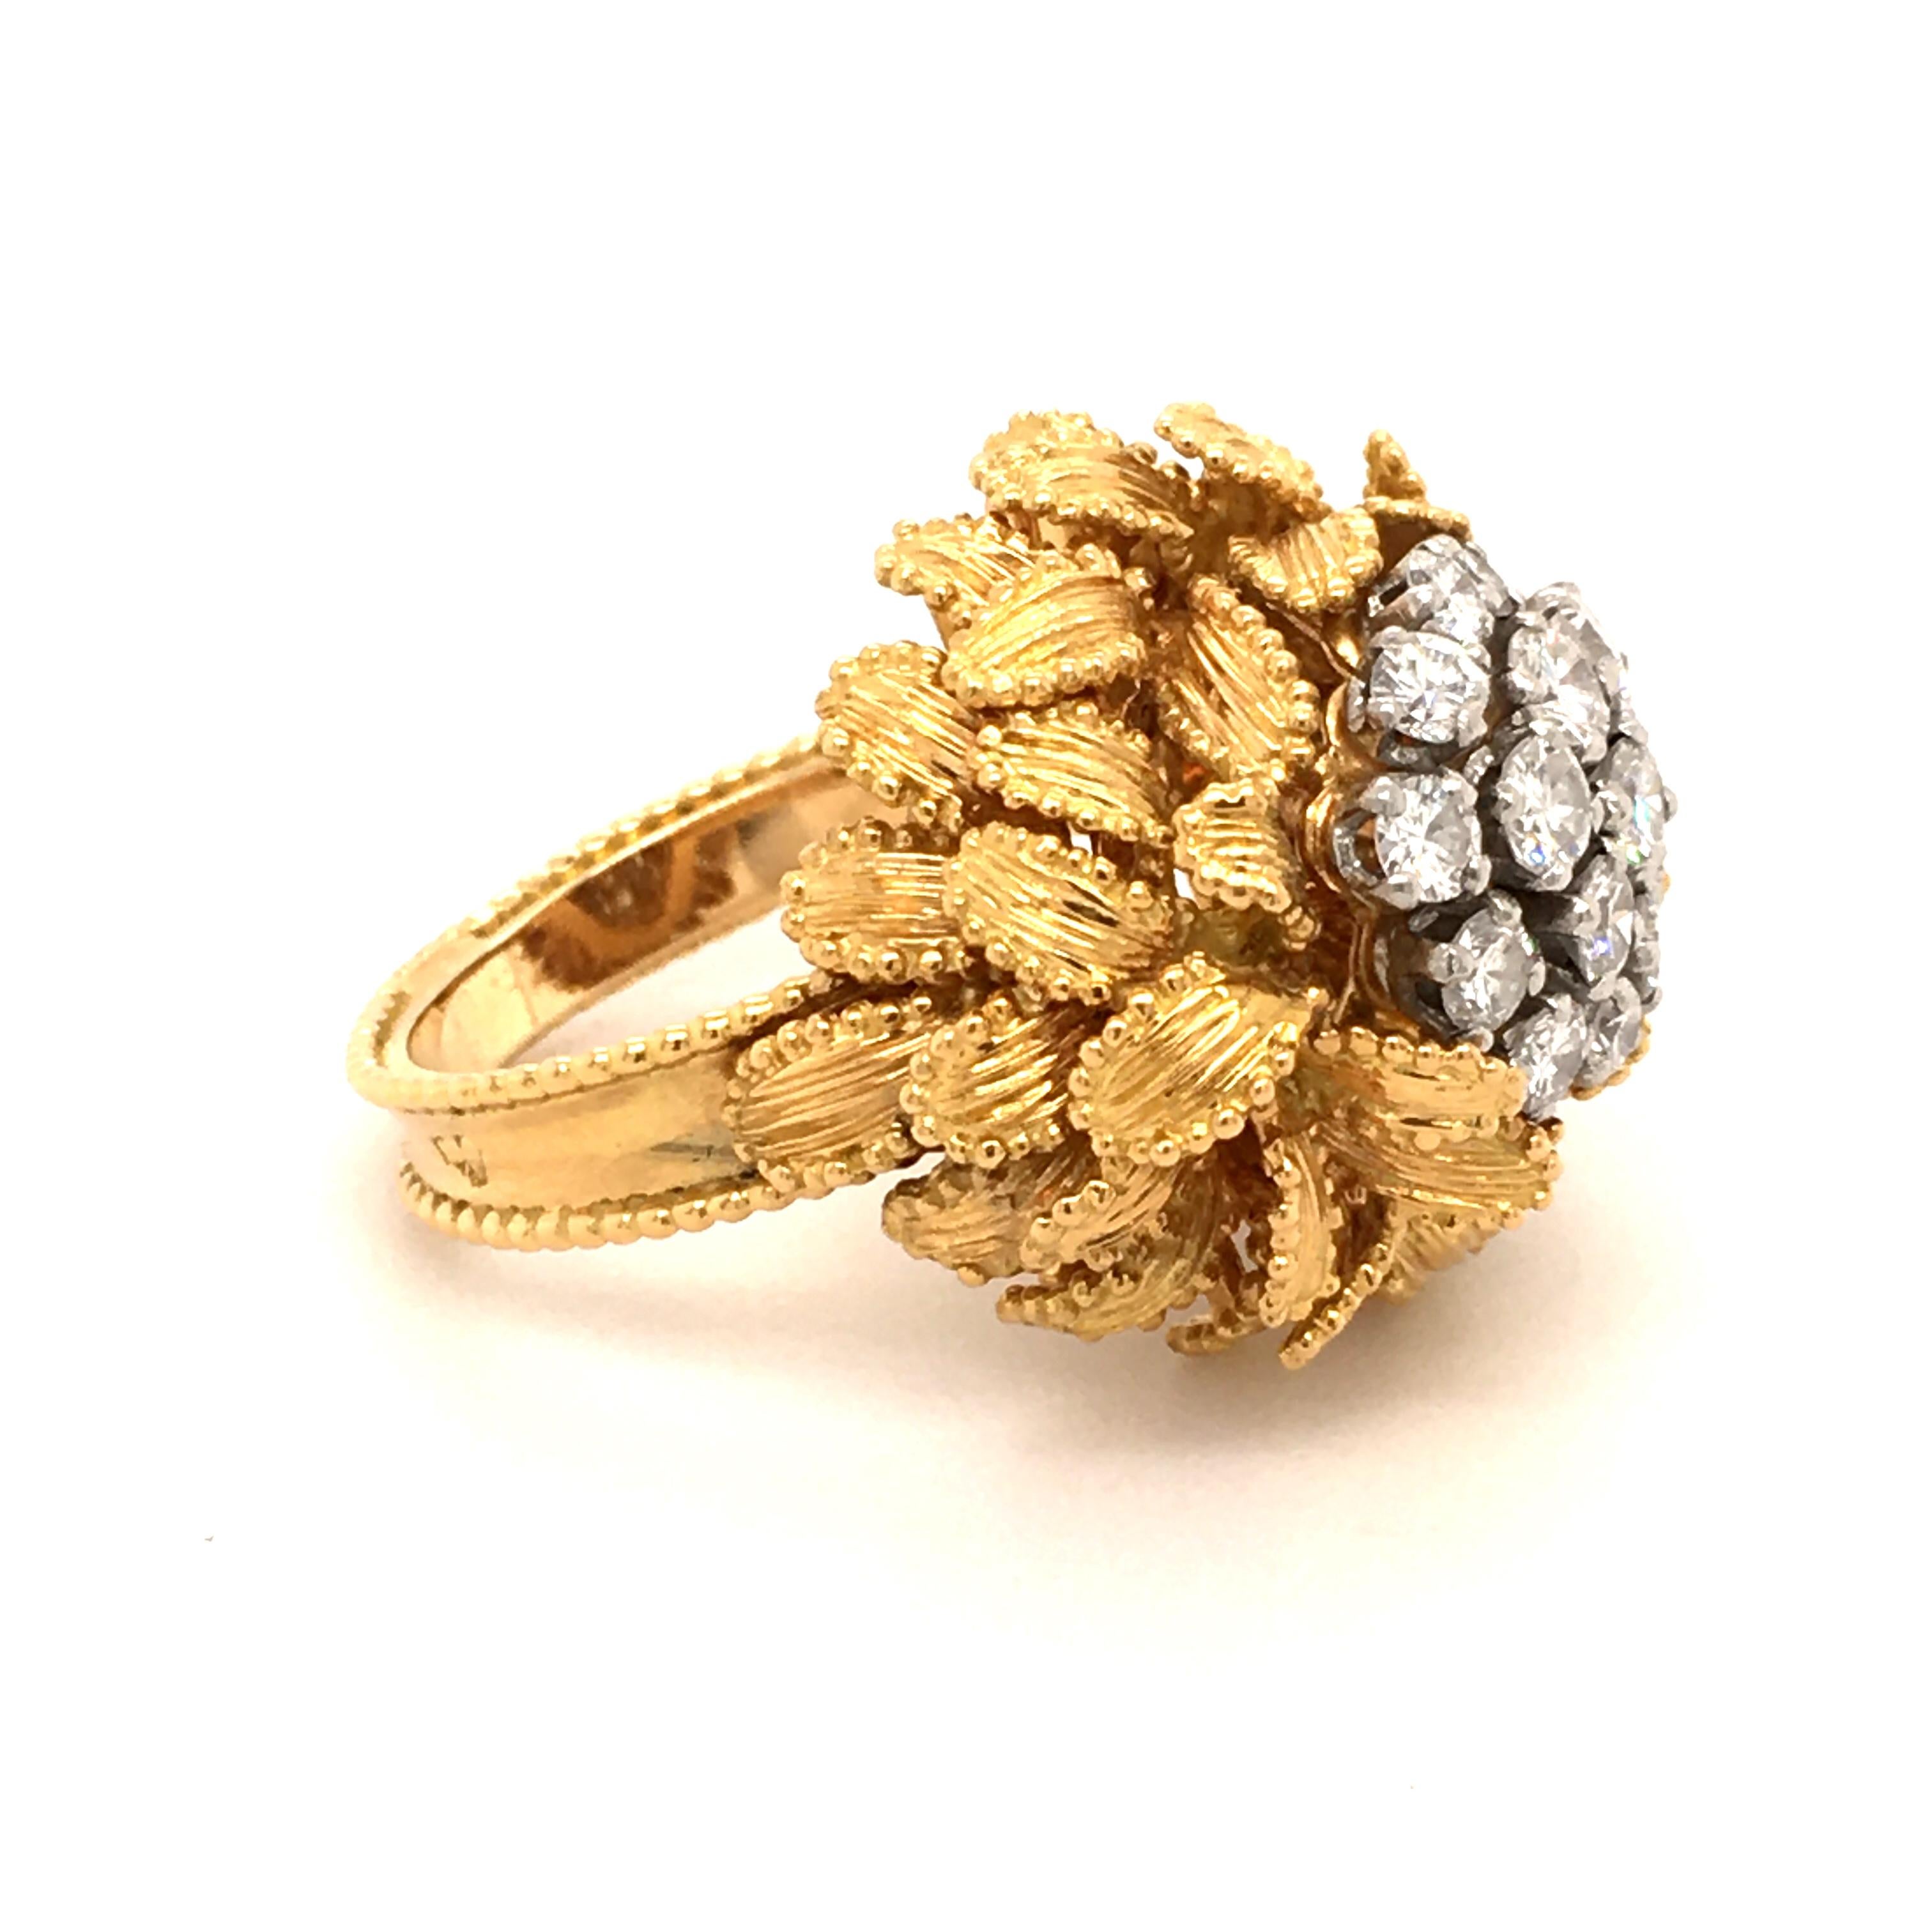 Gubelin Diamond Ring in 18 Karat Yellow and White Gold 1